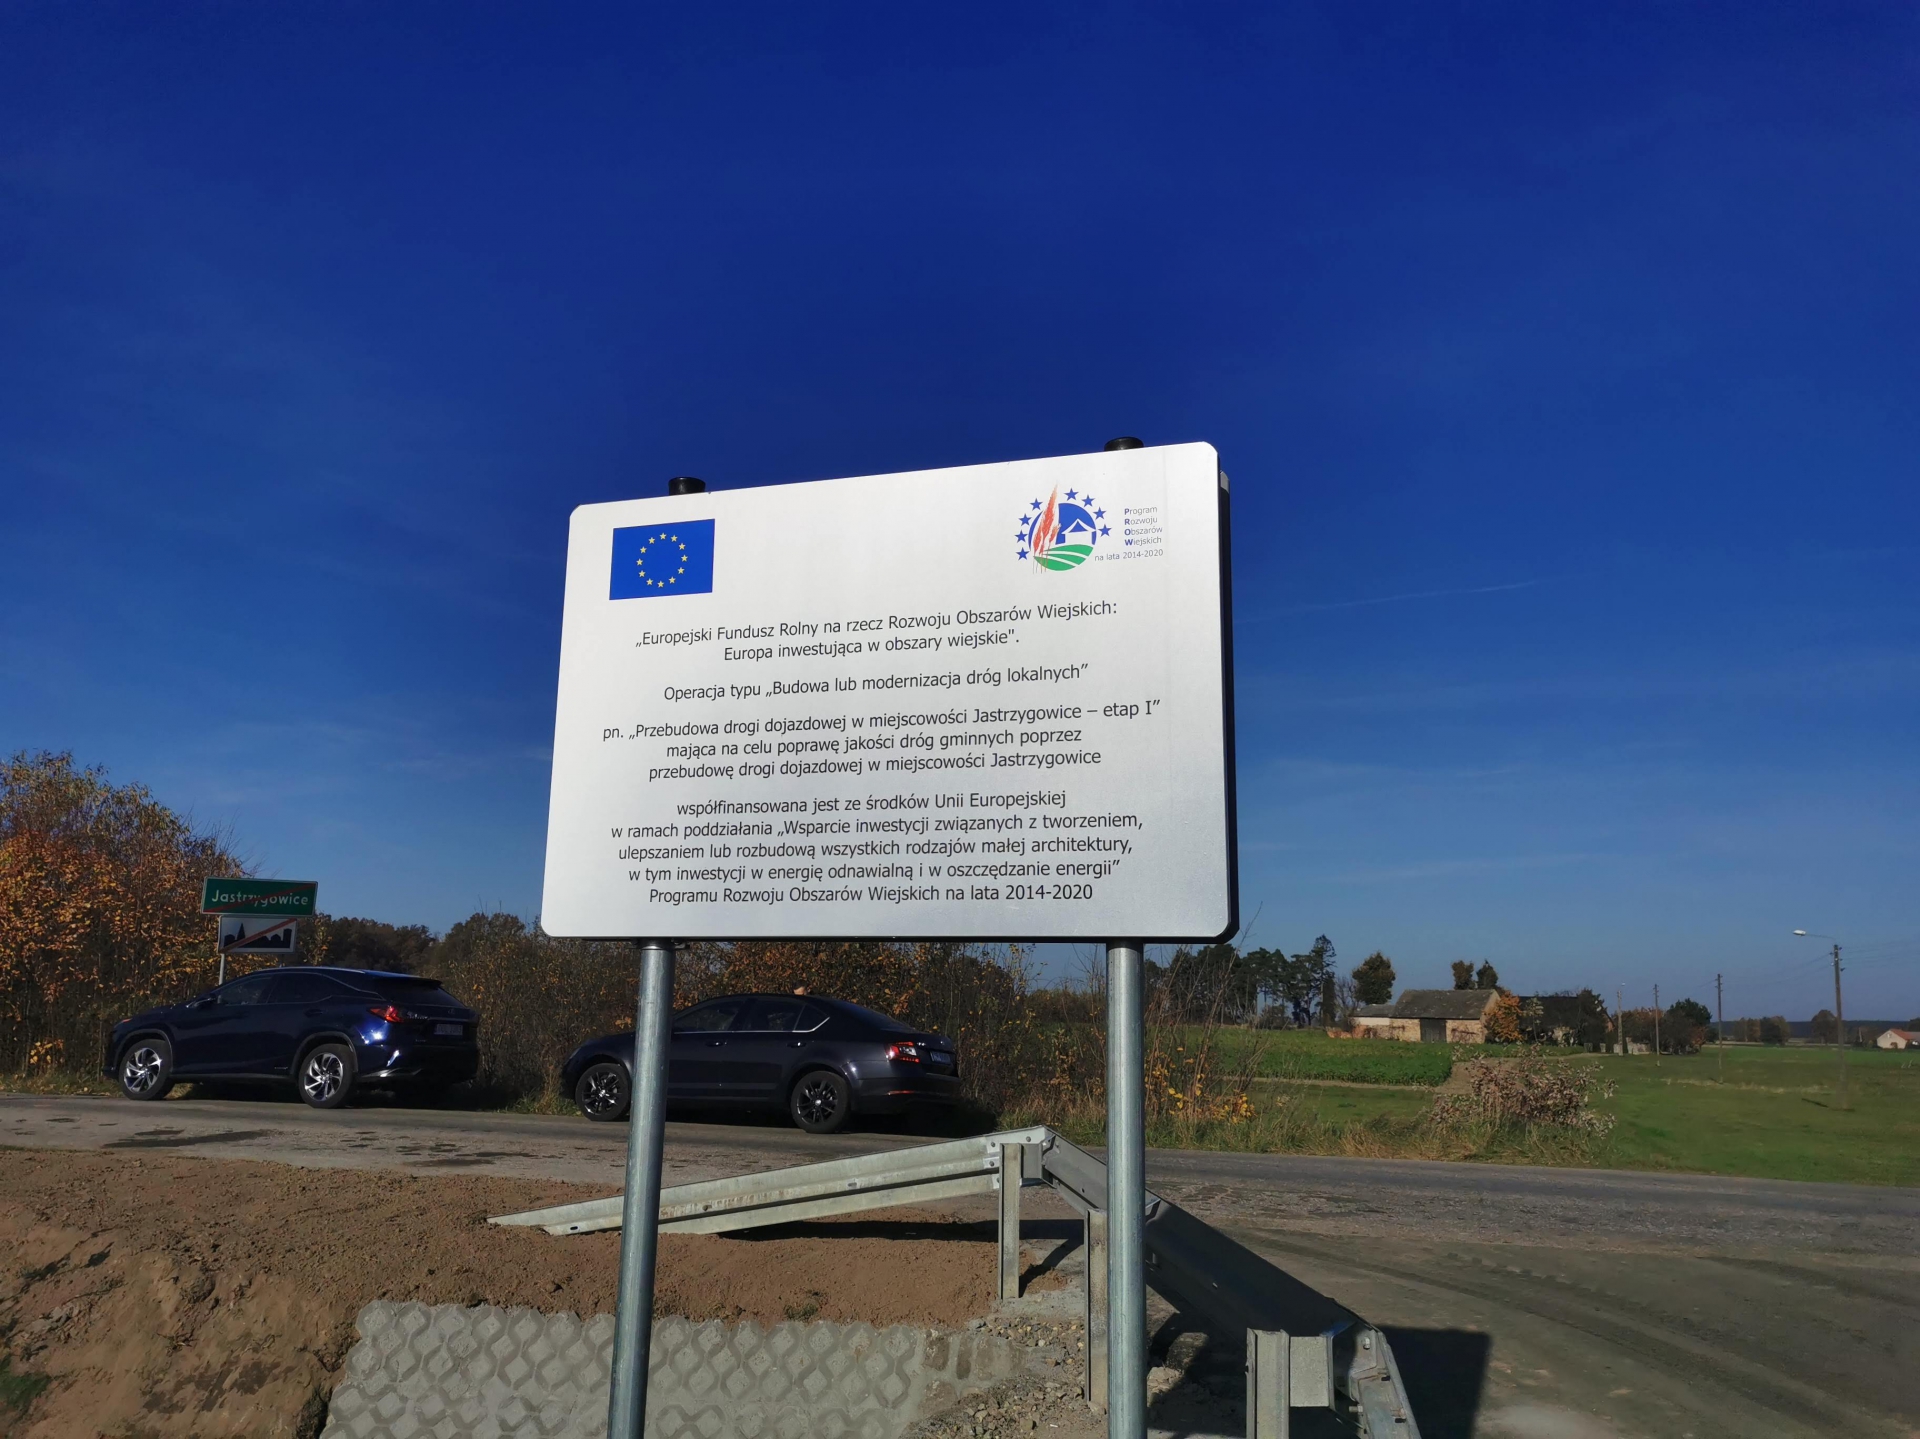 Zdjęcie do artykułu: Zakończenie inwestycji drogowej w miejscowości Jastrzygowice!